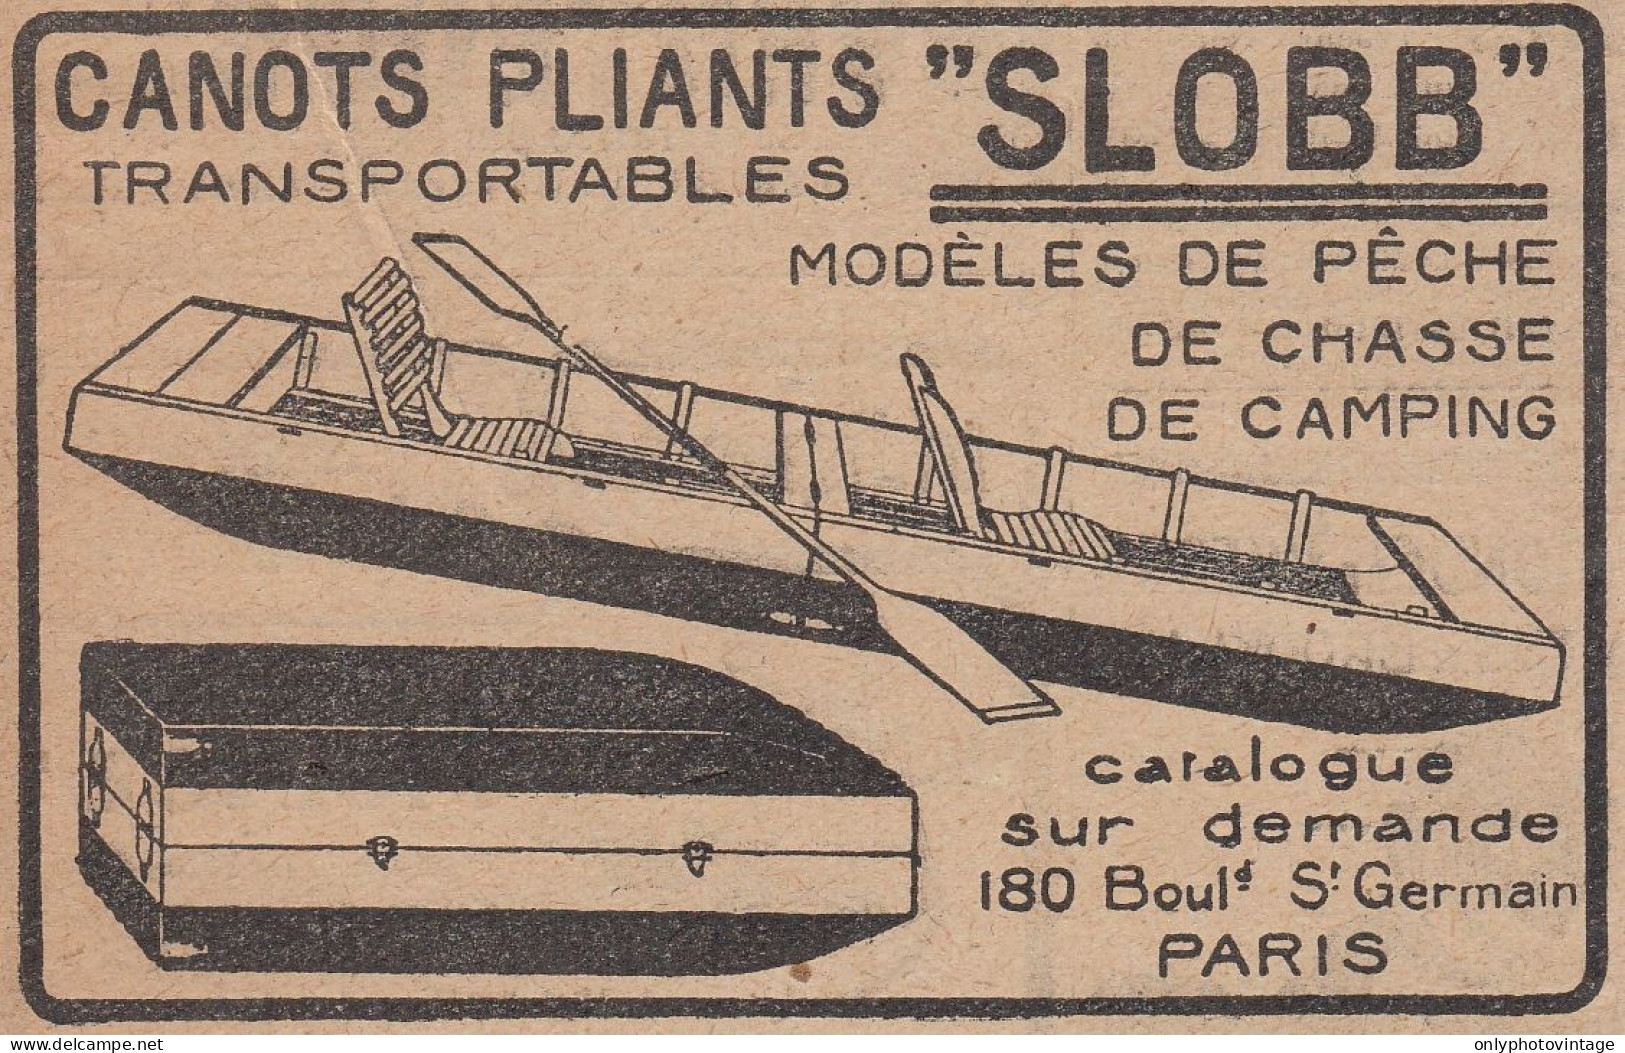 Canots Pliants SLOBB - 1920 Vintage Advertising - Pubblicit� Epoca - Advertising